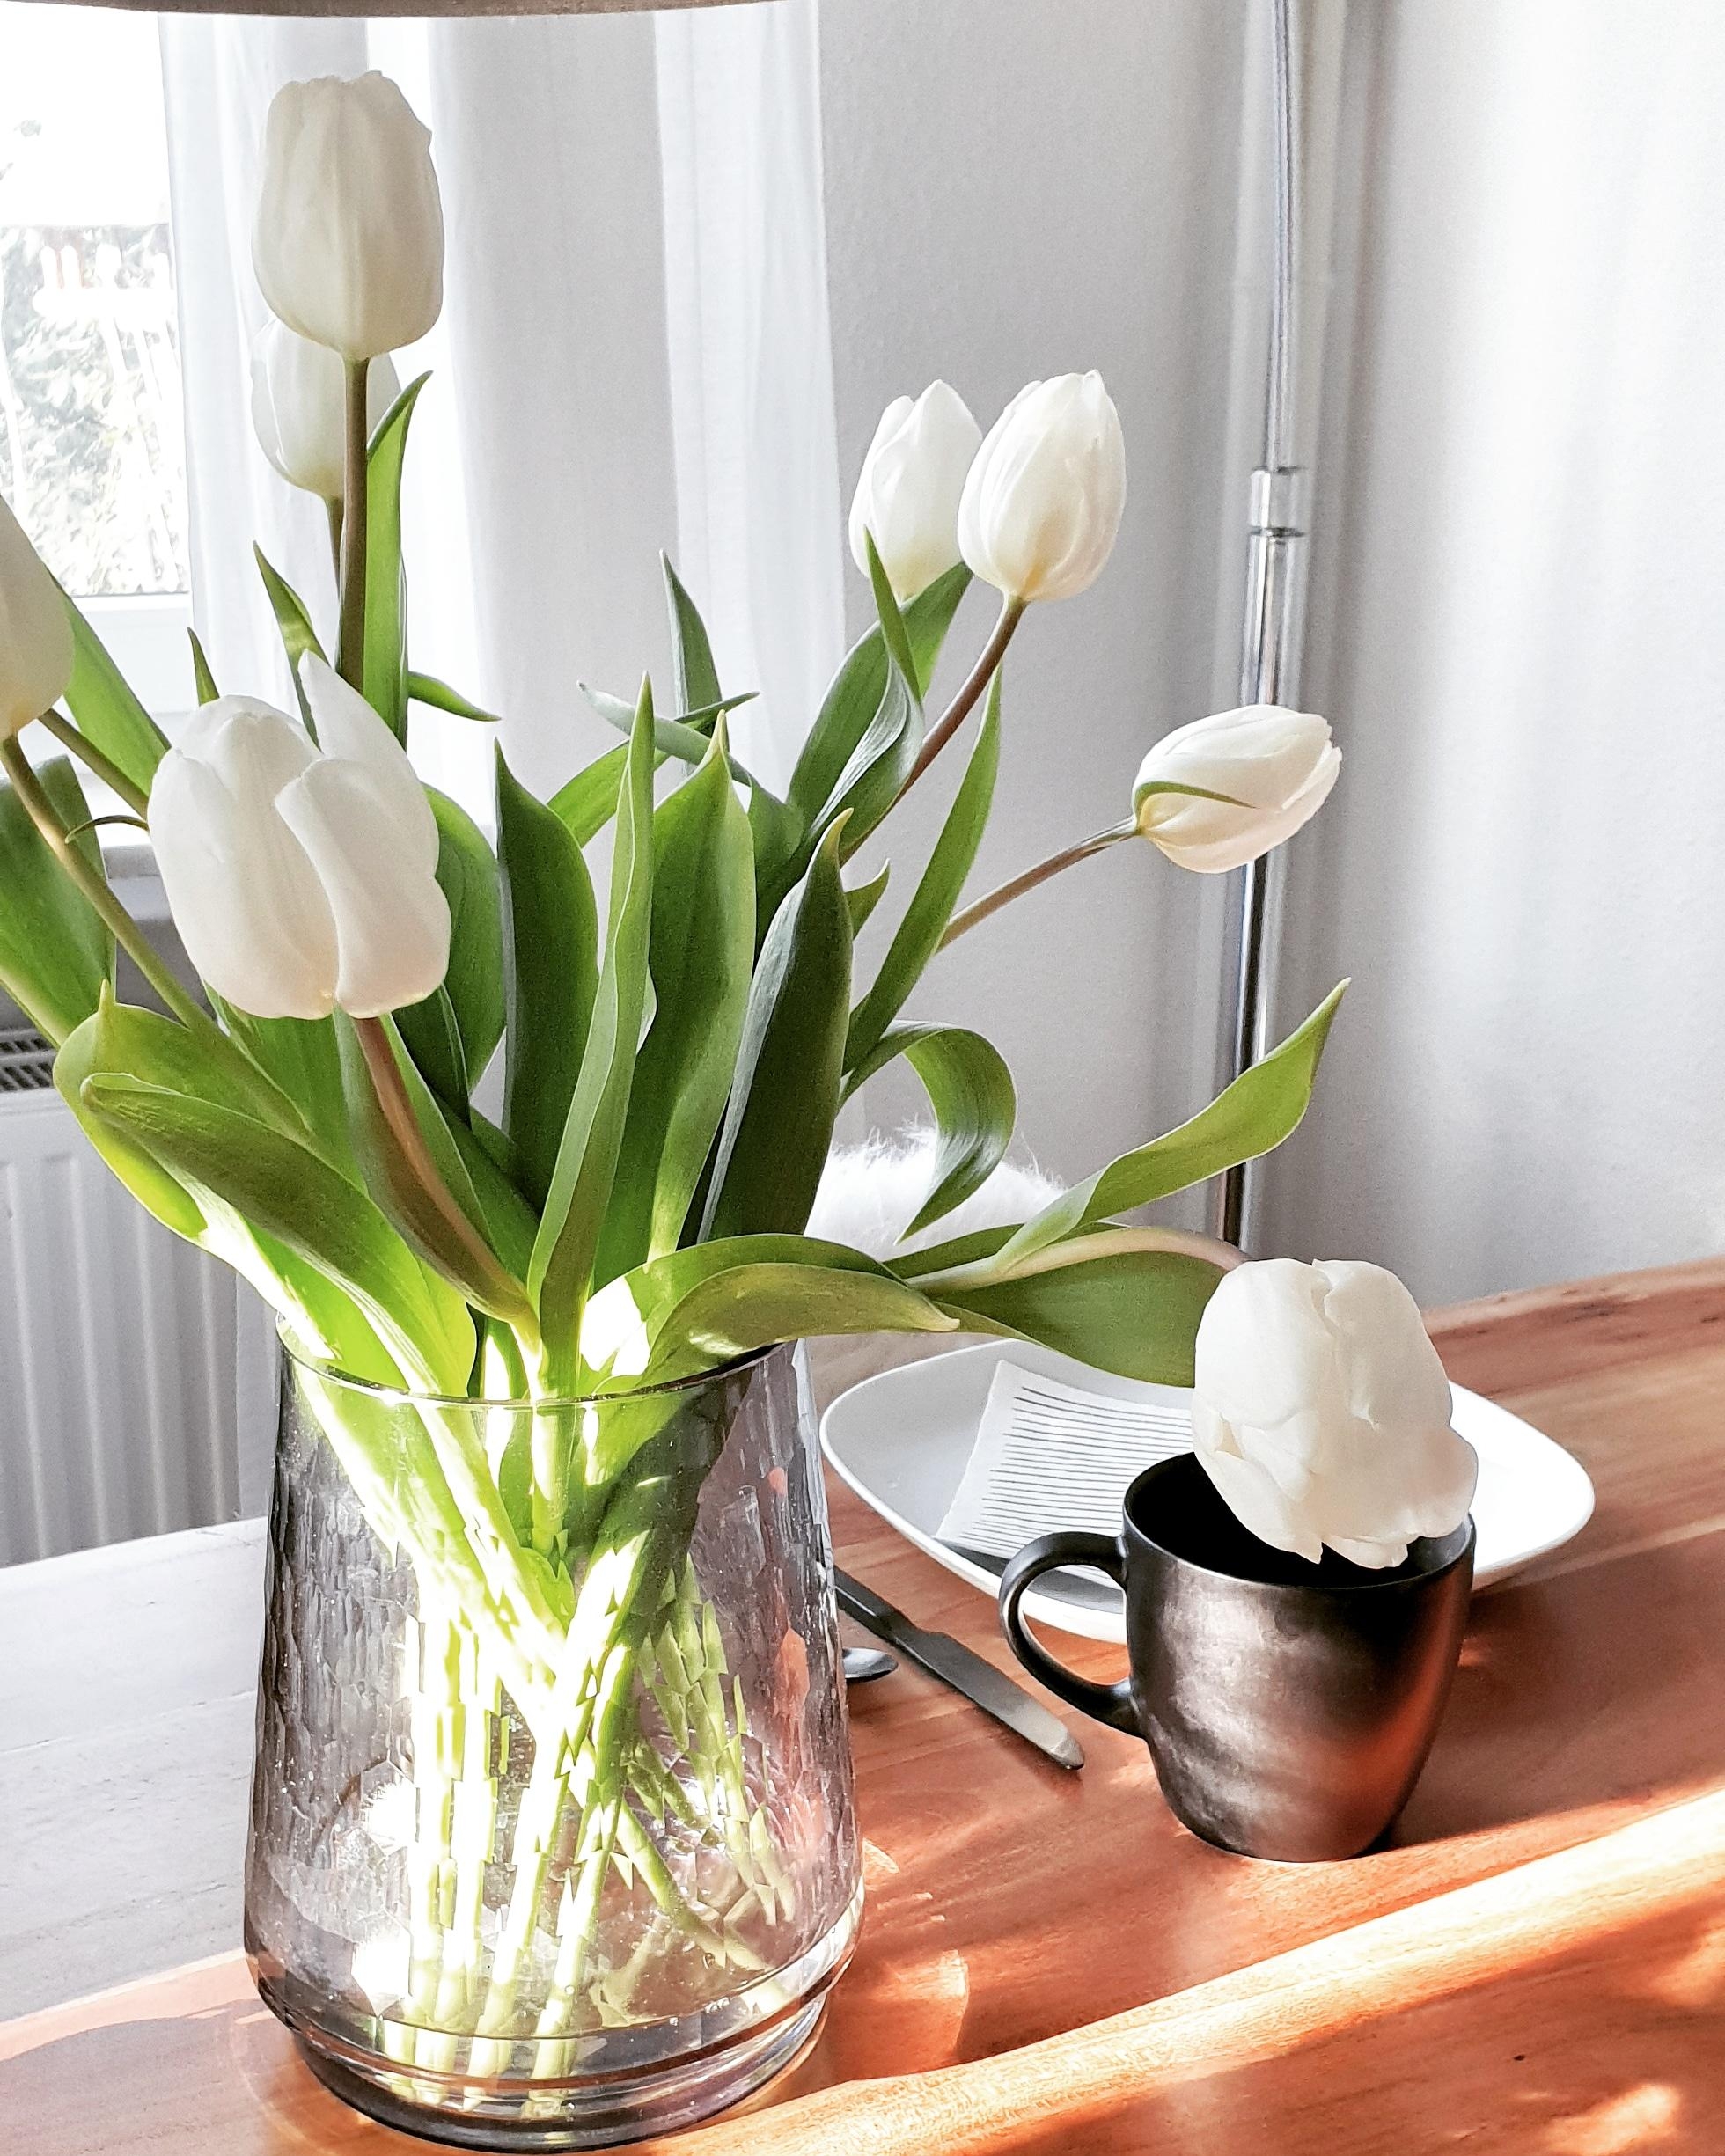 T U L P E N  L I E B E ⚘

#tulip #springiscalling #details #diningtable